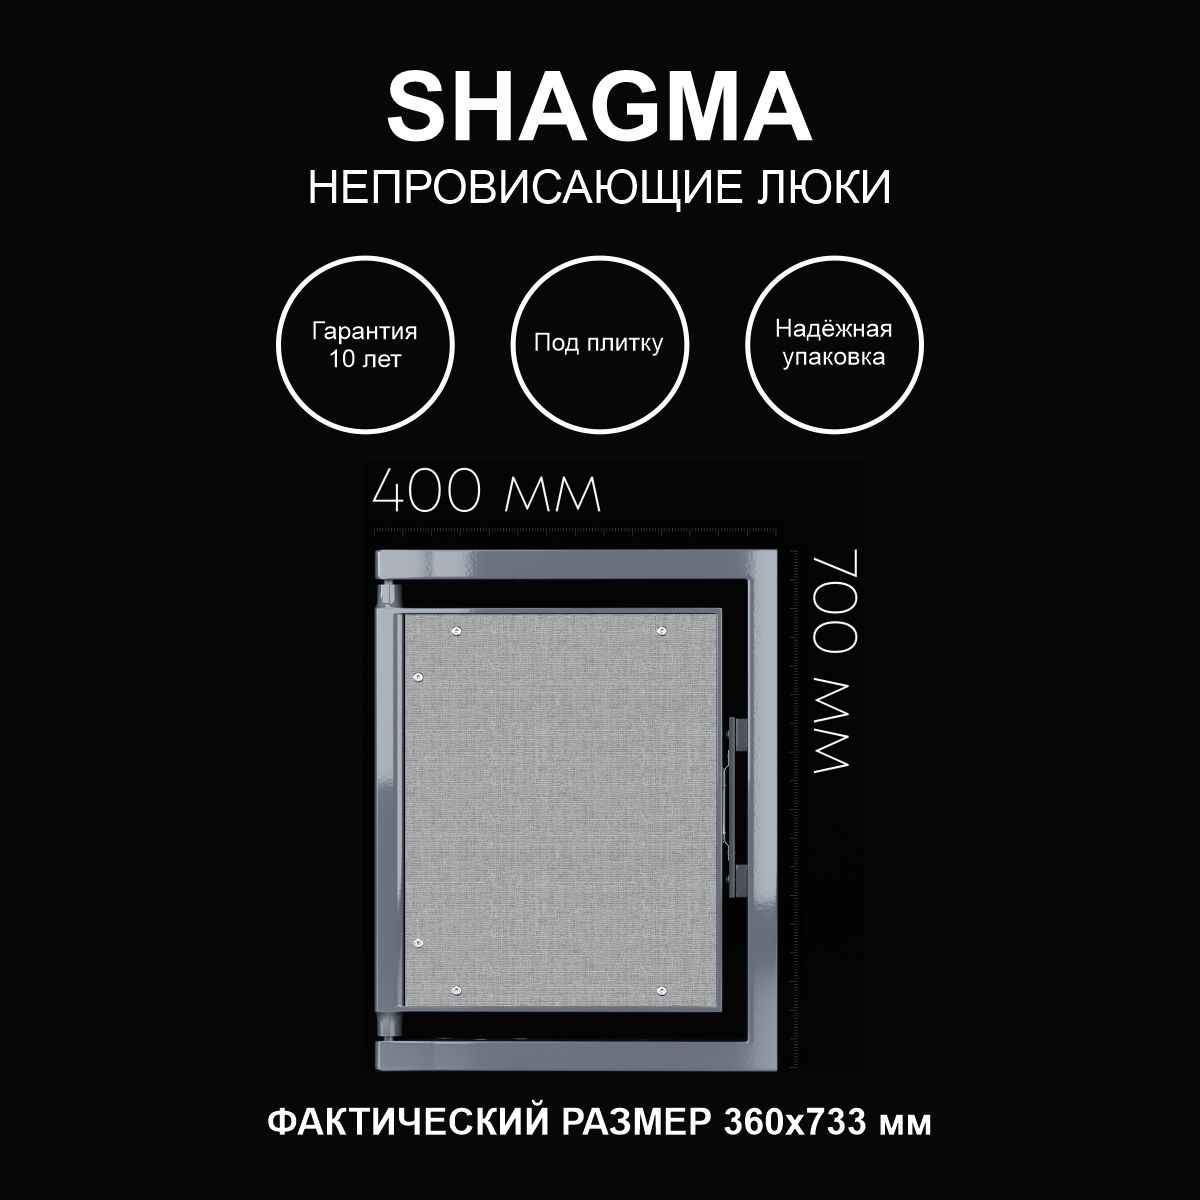 Люк SHAGMA ревизионный под плитку сантехнический 400х700 мм